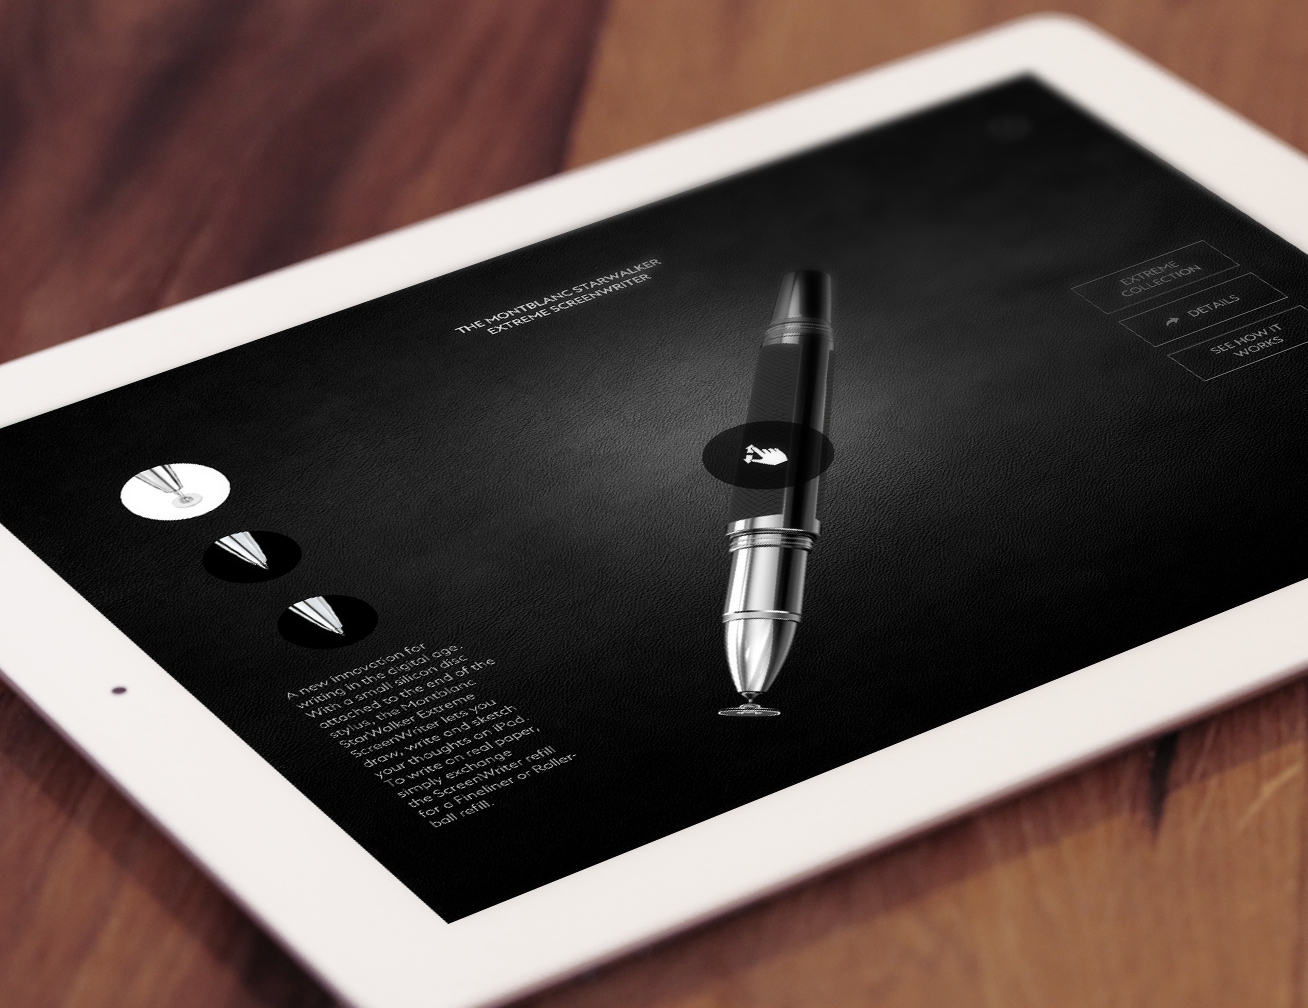  Montblanc e AKQA partner per la creazione dell’ App Montblanc Screenwriter per iPad